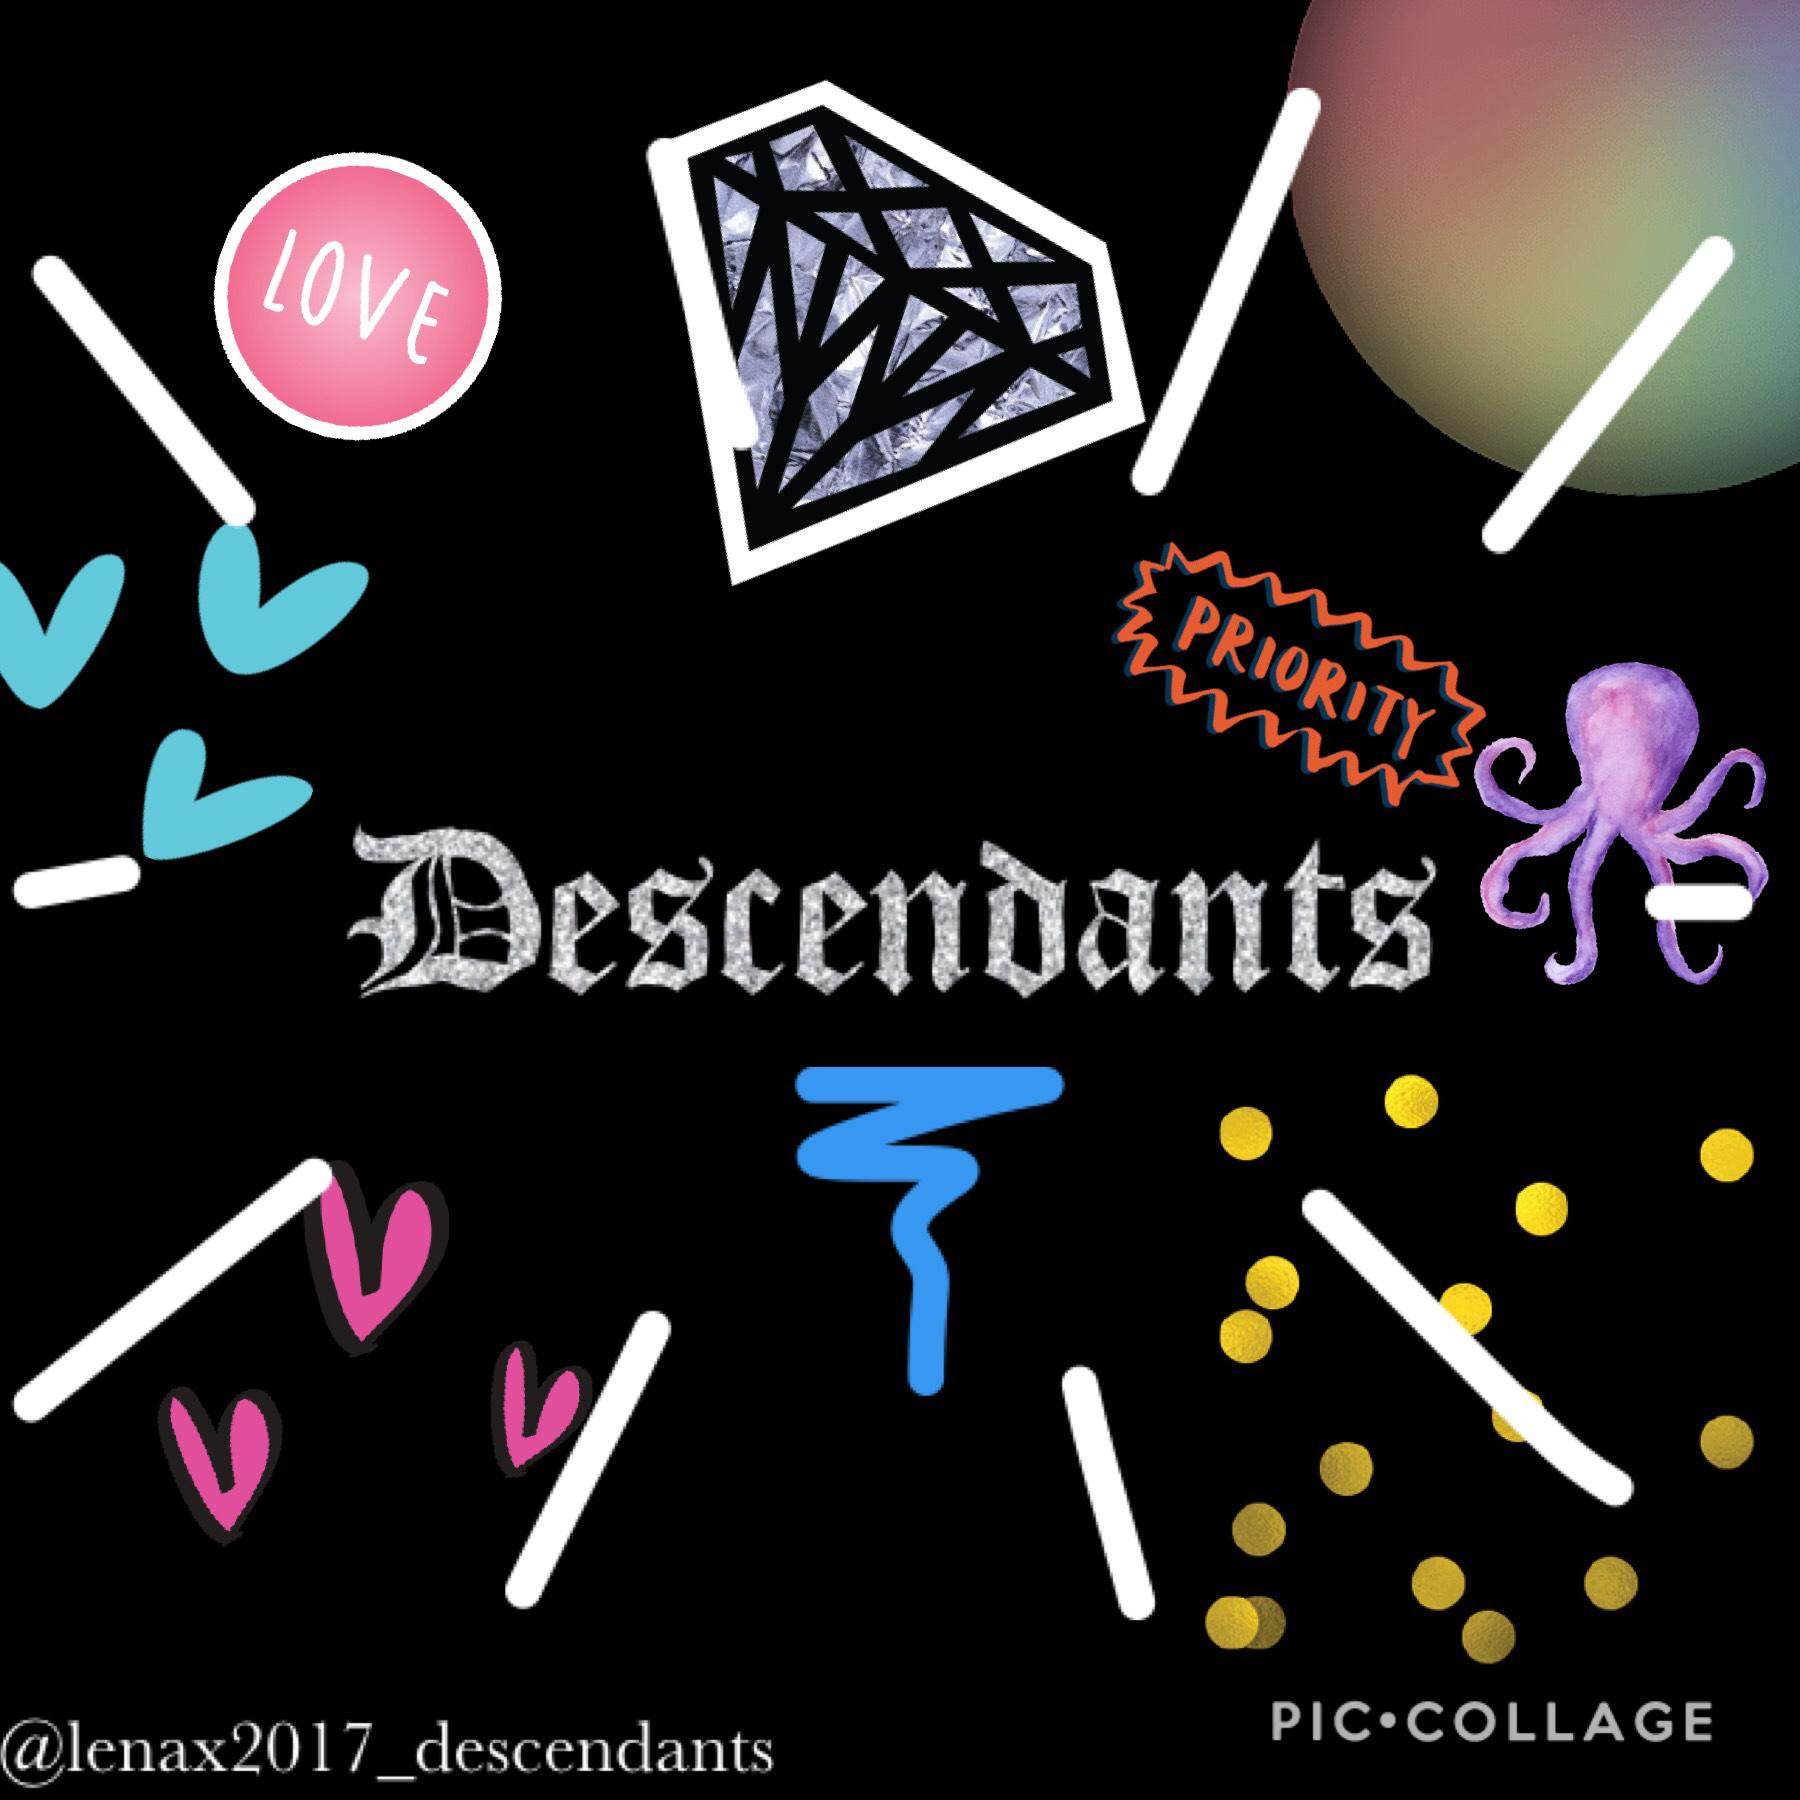 Descendants 😍😍😍❤️